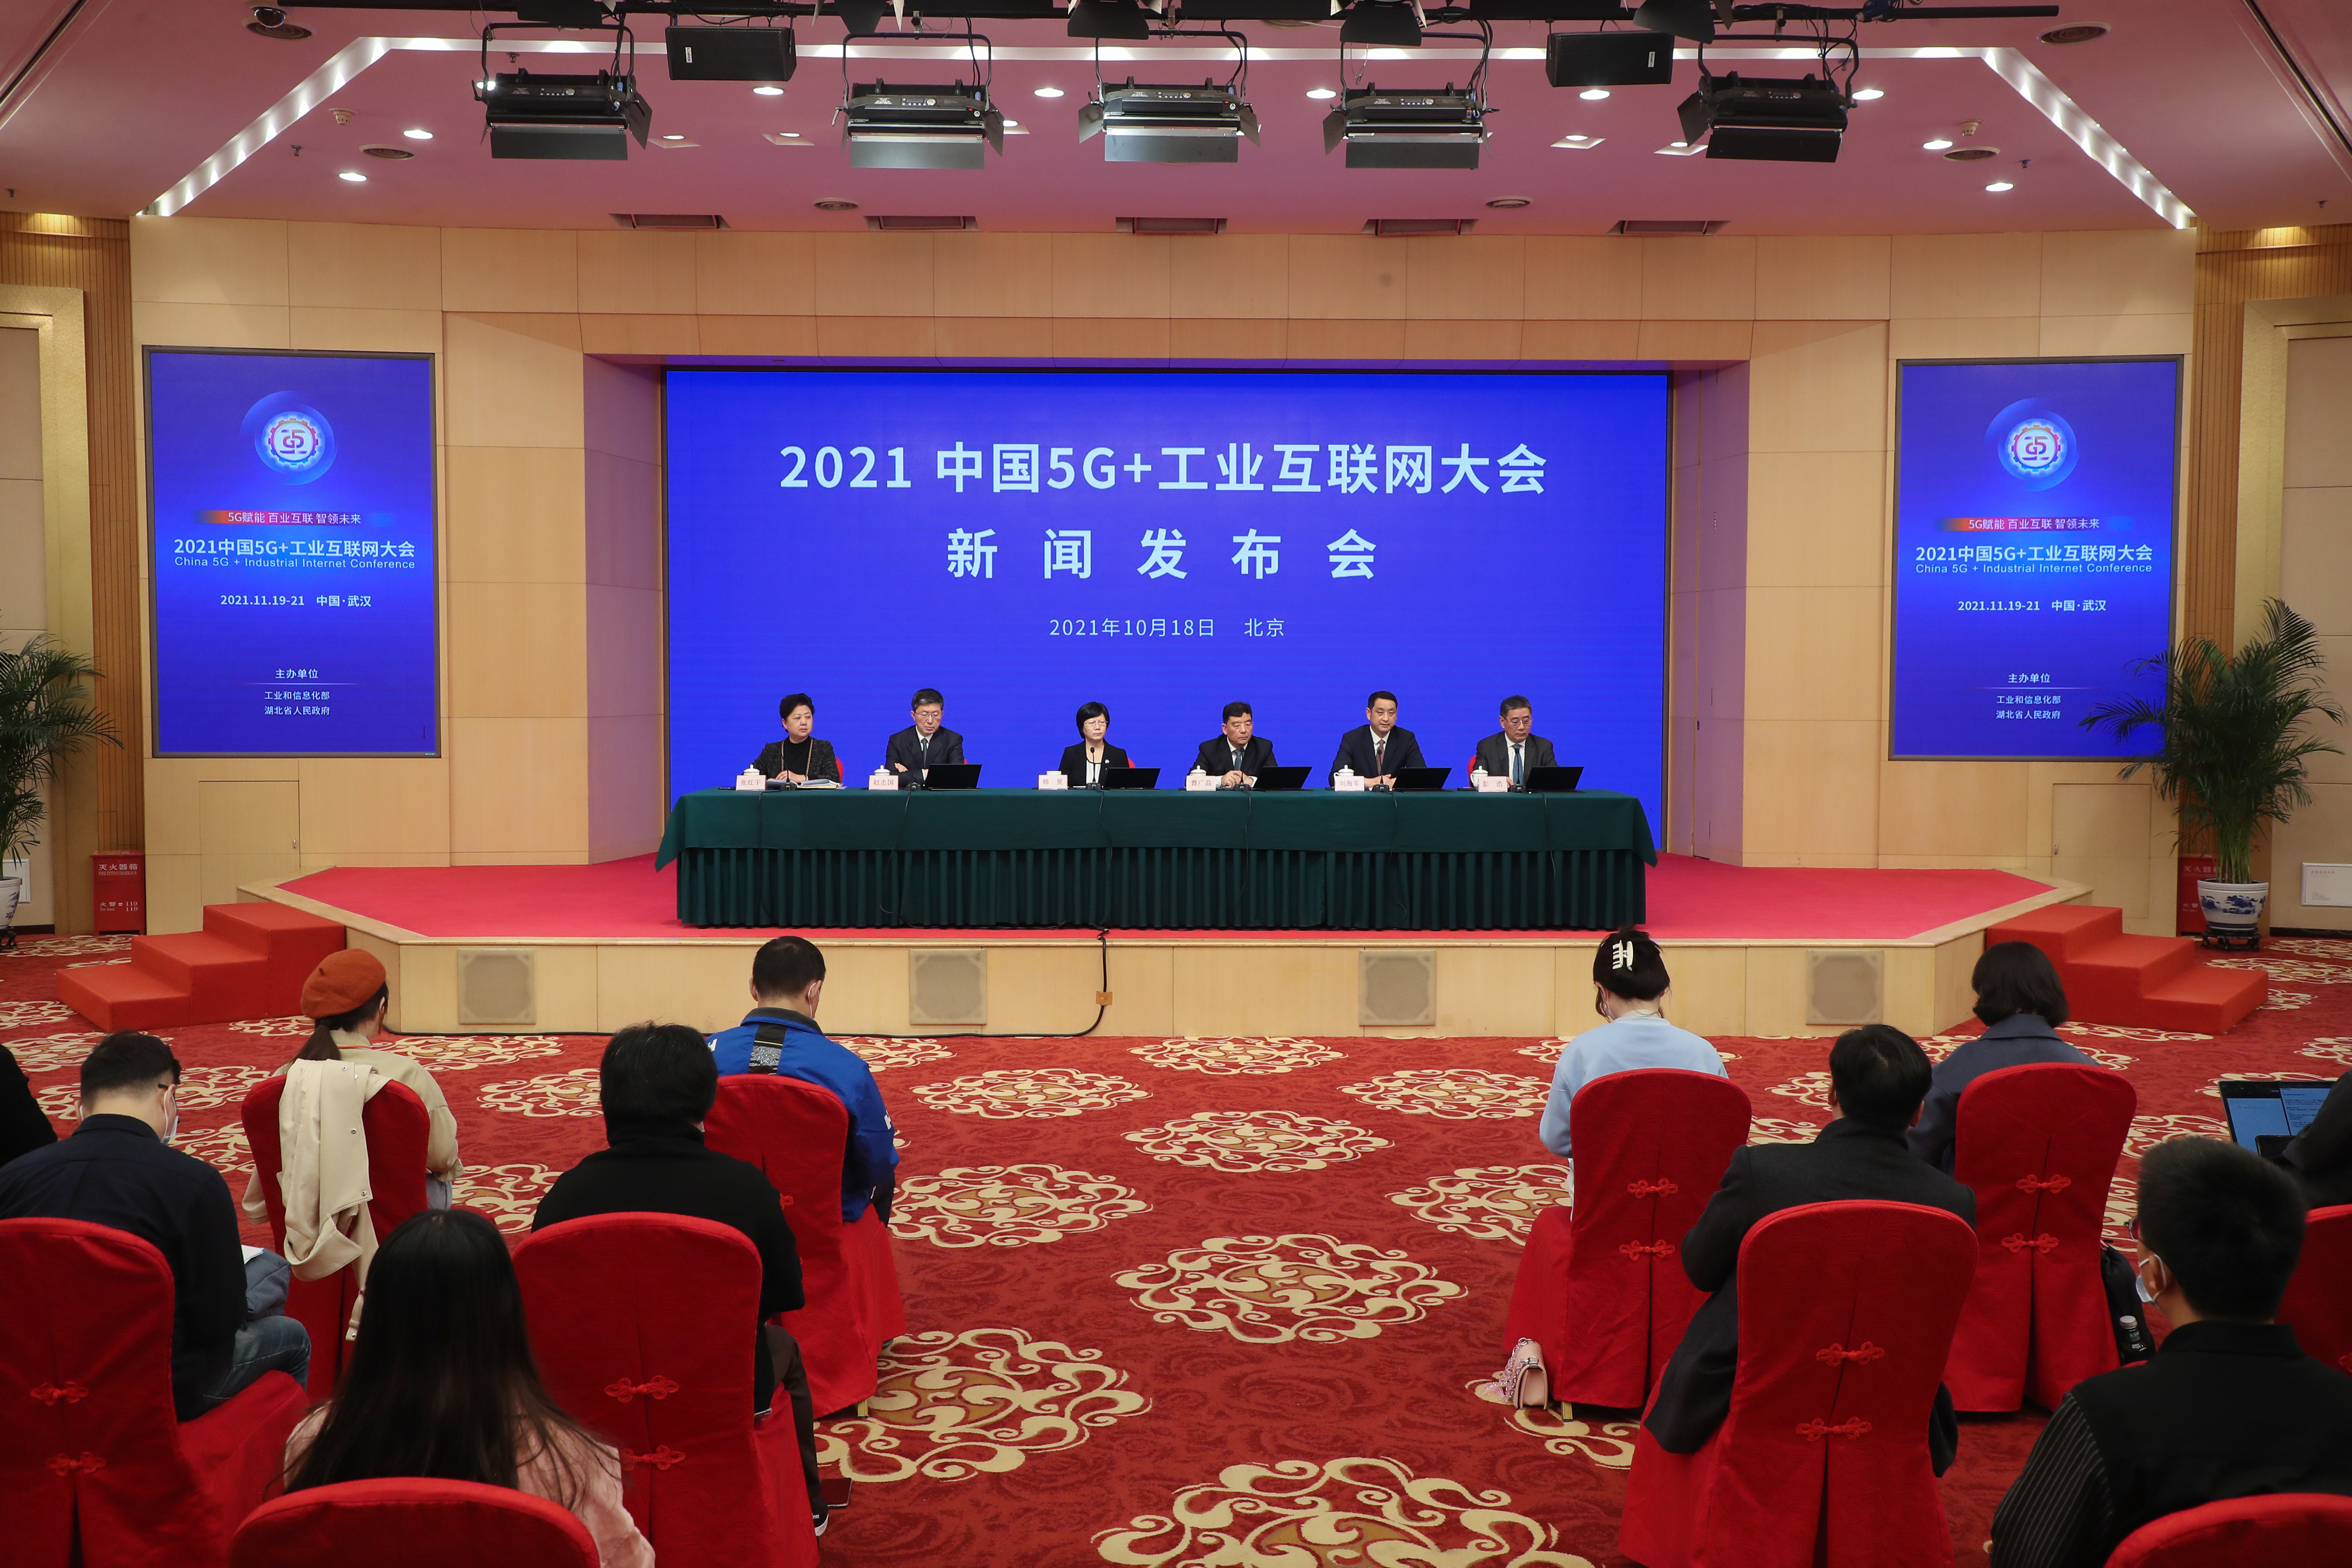 “2021中国5G+工业互联网大会11月在武汉召开 新设互动体验专区